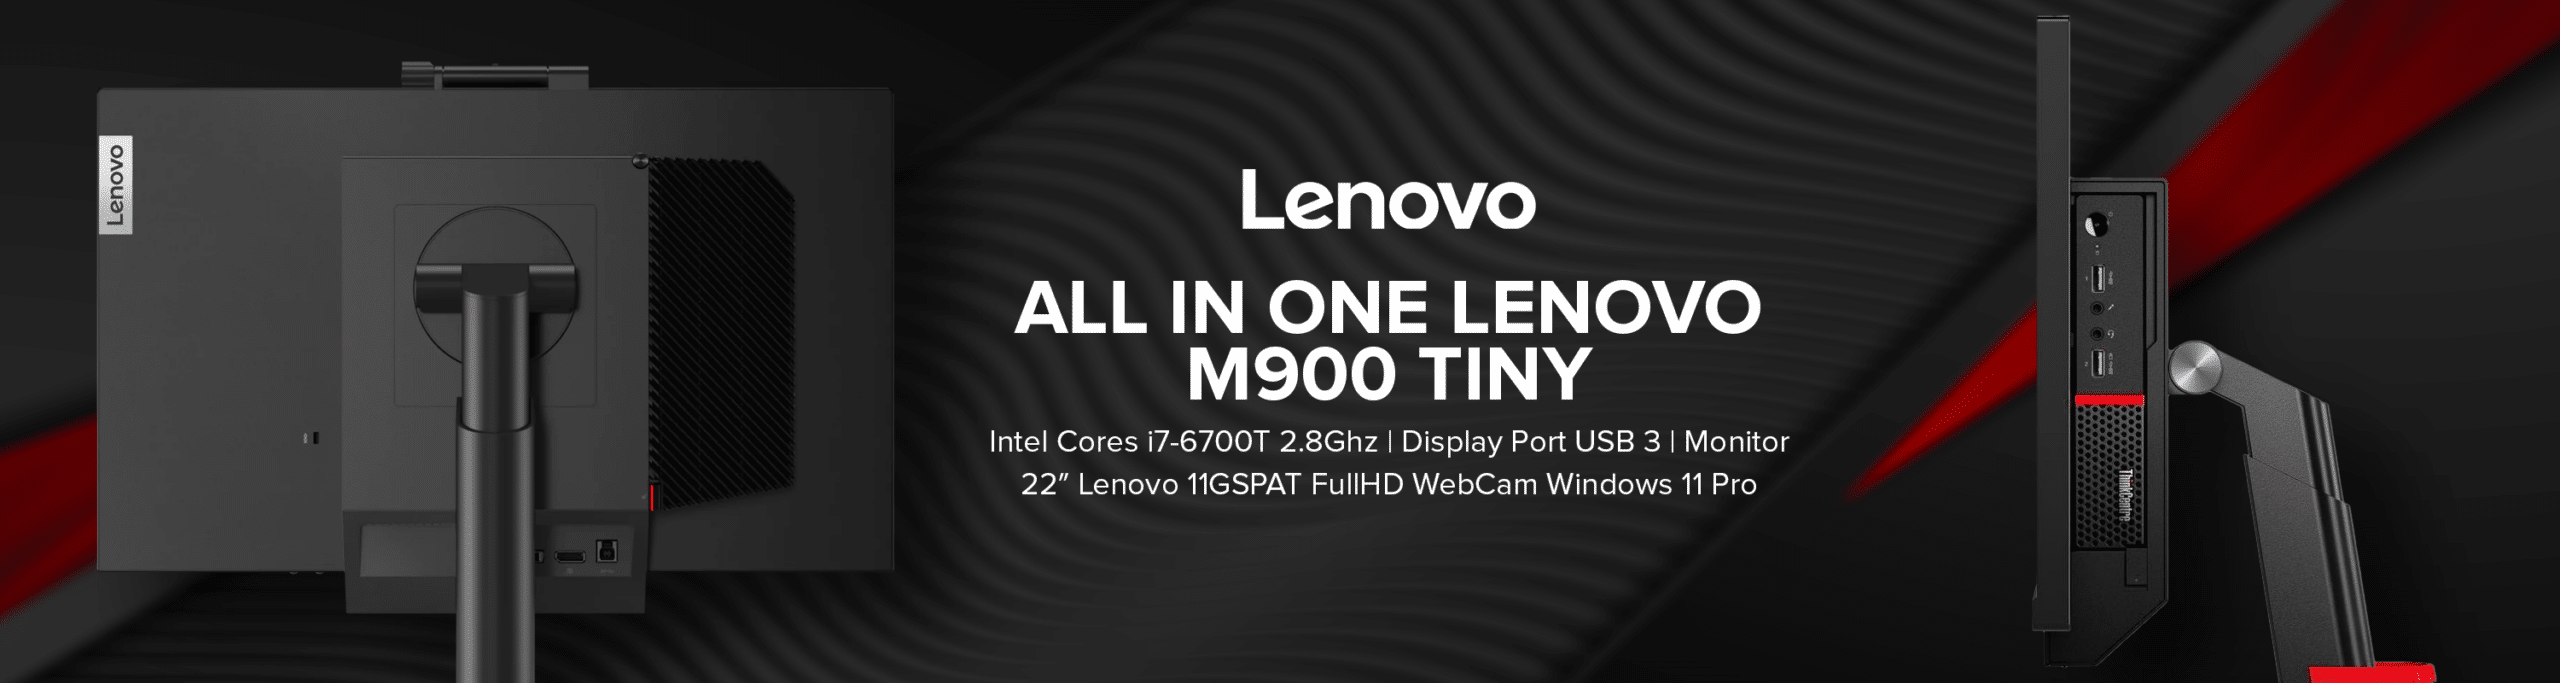 All In One Lenovo M900 Tiny corretto (3)